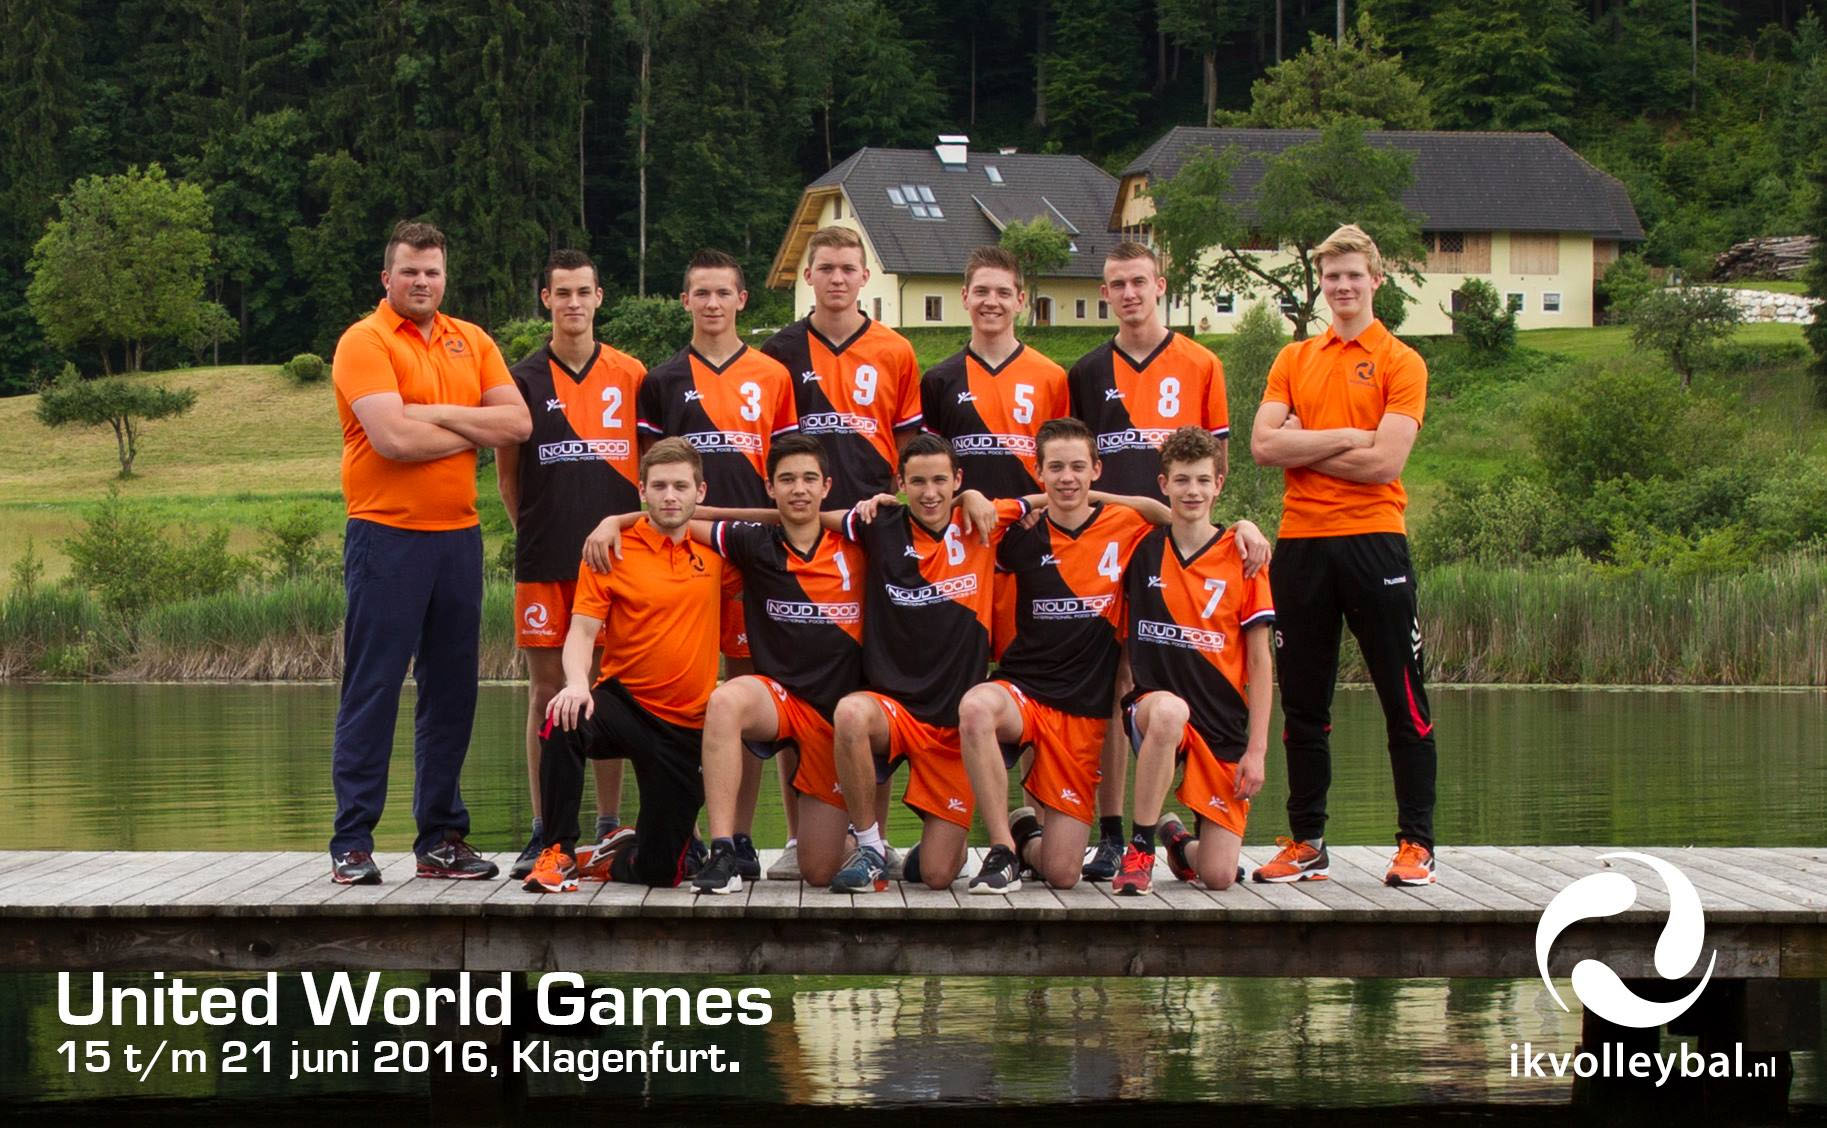 united-world-games-oostenrijk-2016-4